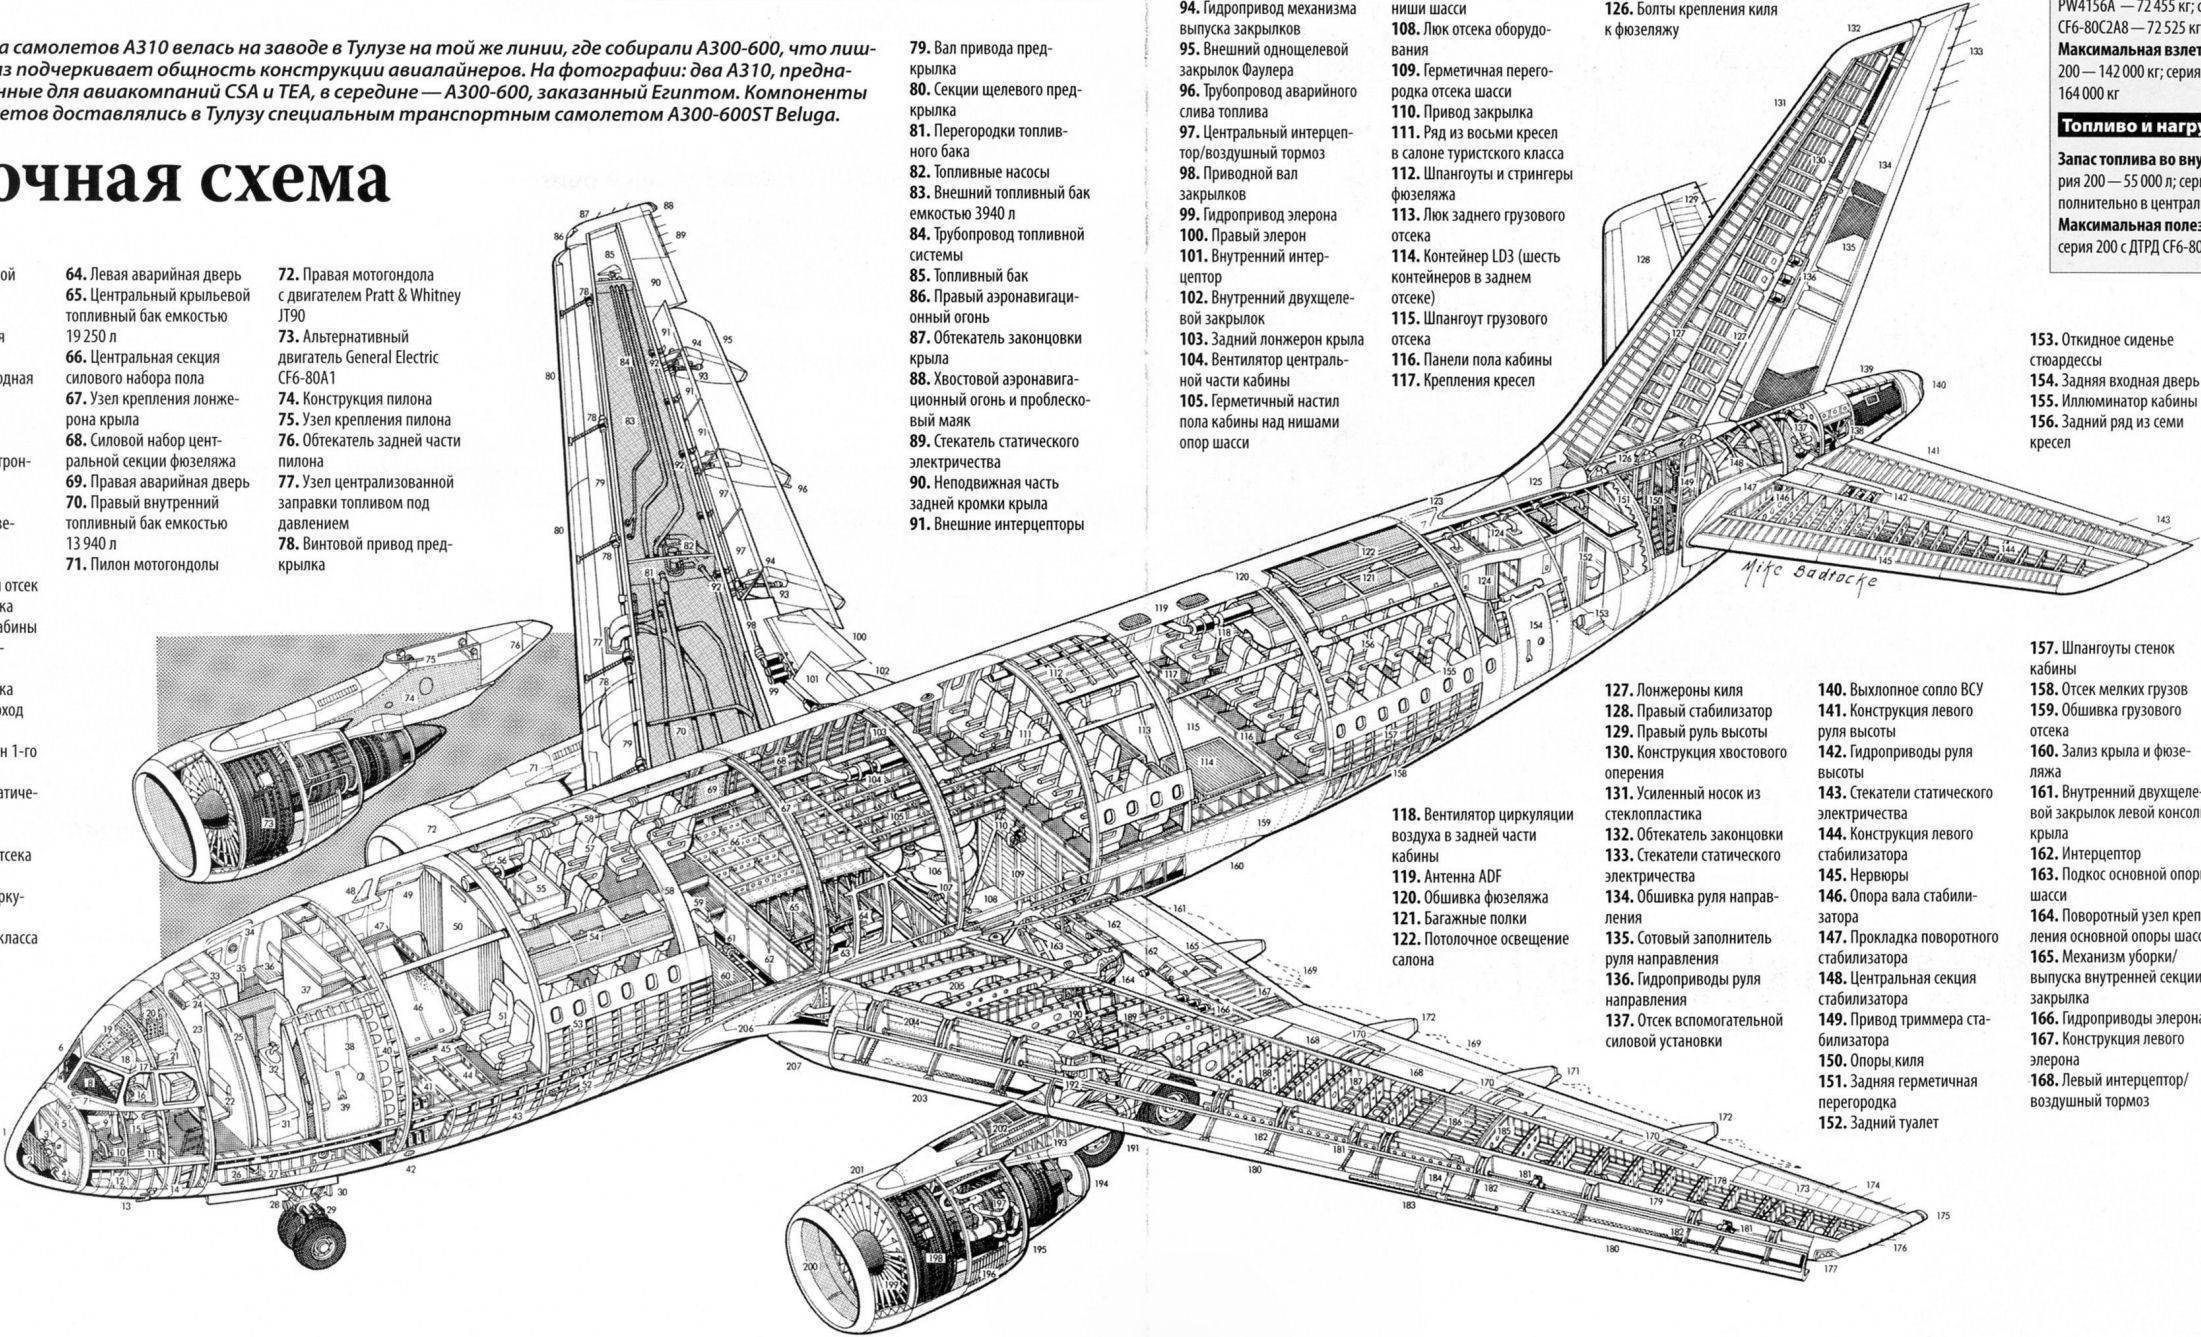 Самолет а340 ???? описание, конструкция, ттх, особенности